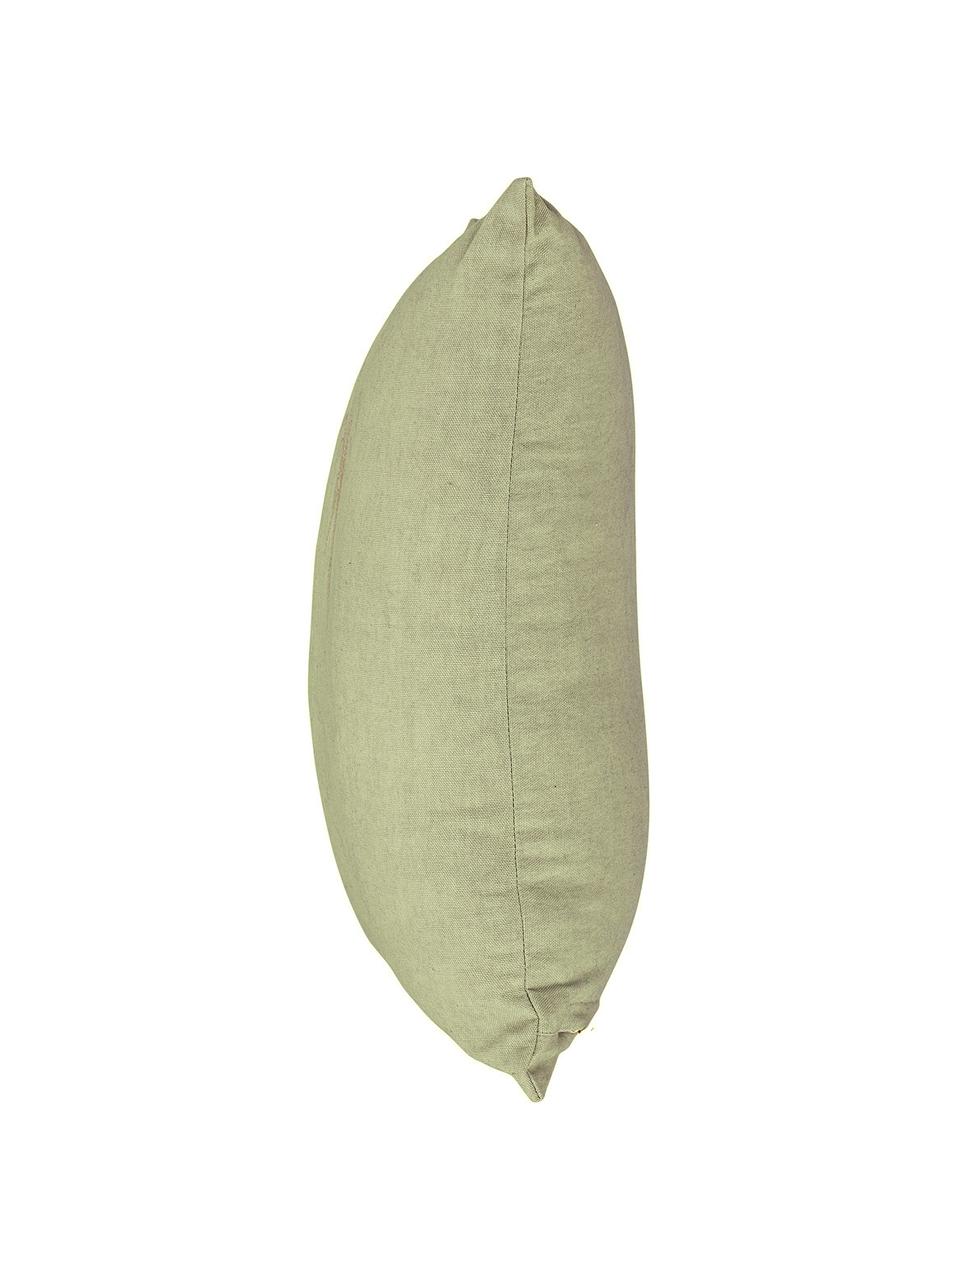 Poduszka Ivy, Oliwkowy zielony, złoty, 45 x 45 cm